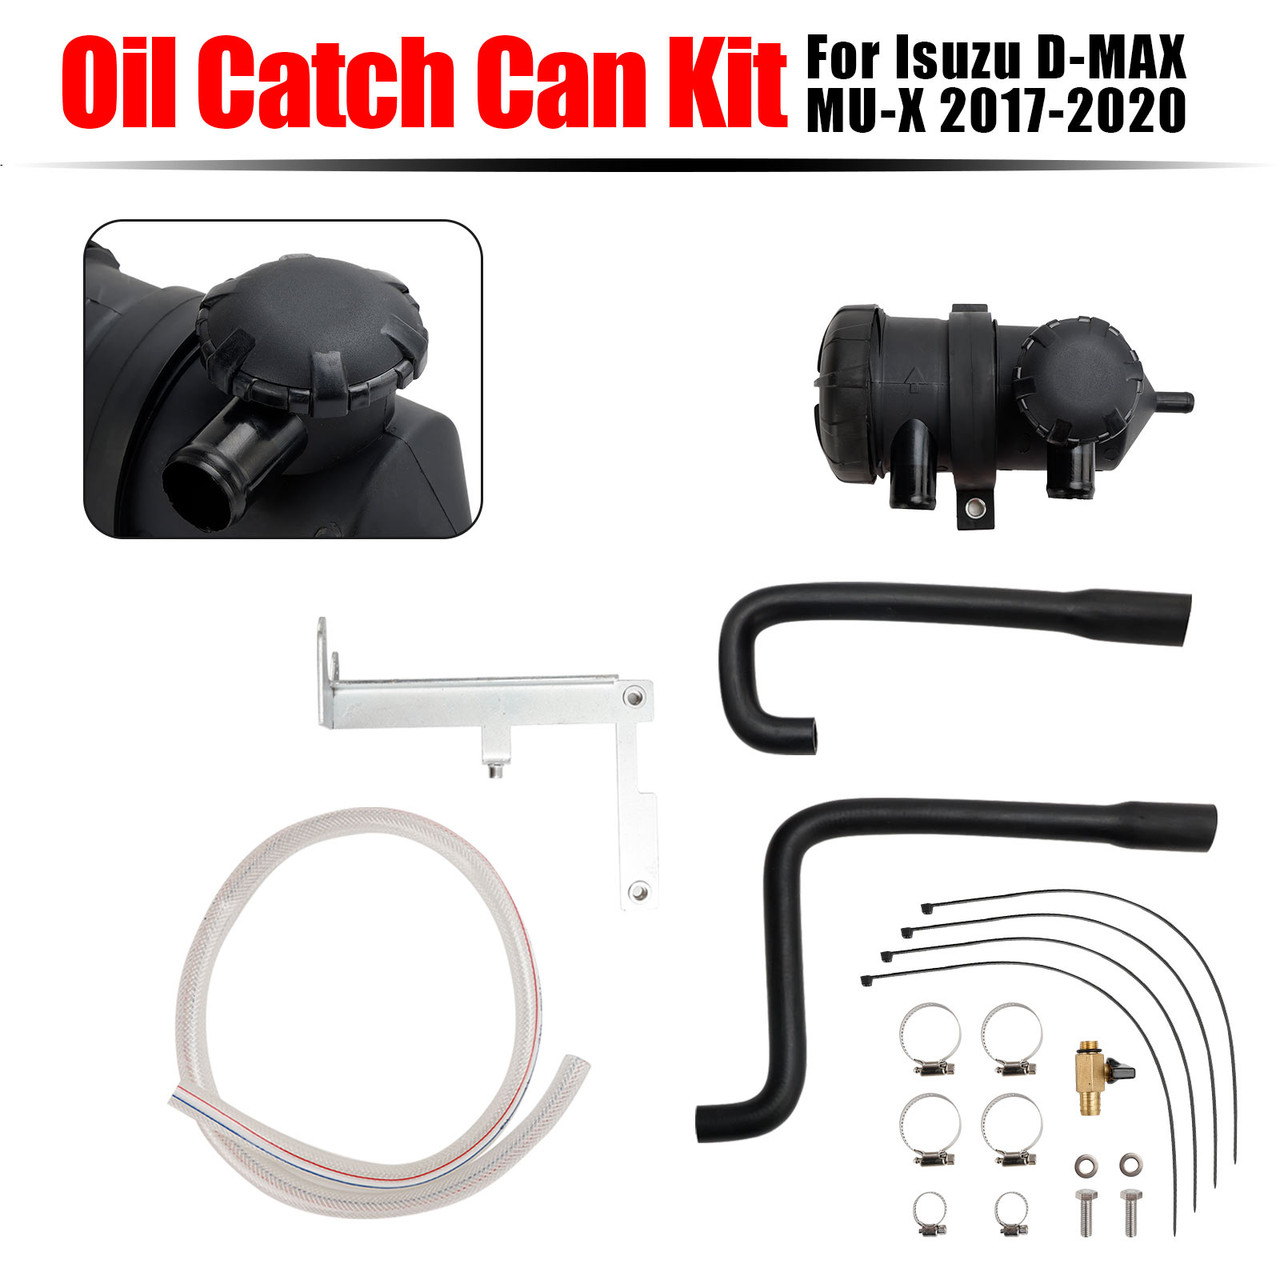 Oil Catch Can Kit OS-PROV-25 For Isuzu D-MAX MU-X 2017-2020 3.0L TD